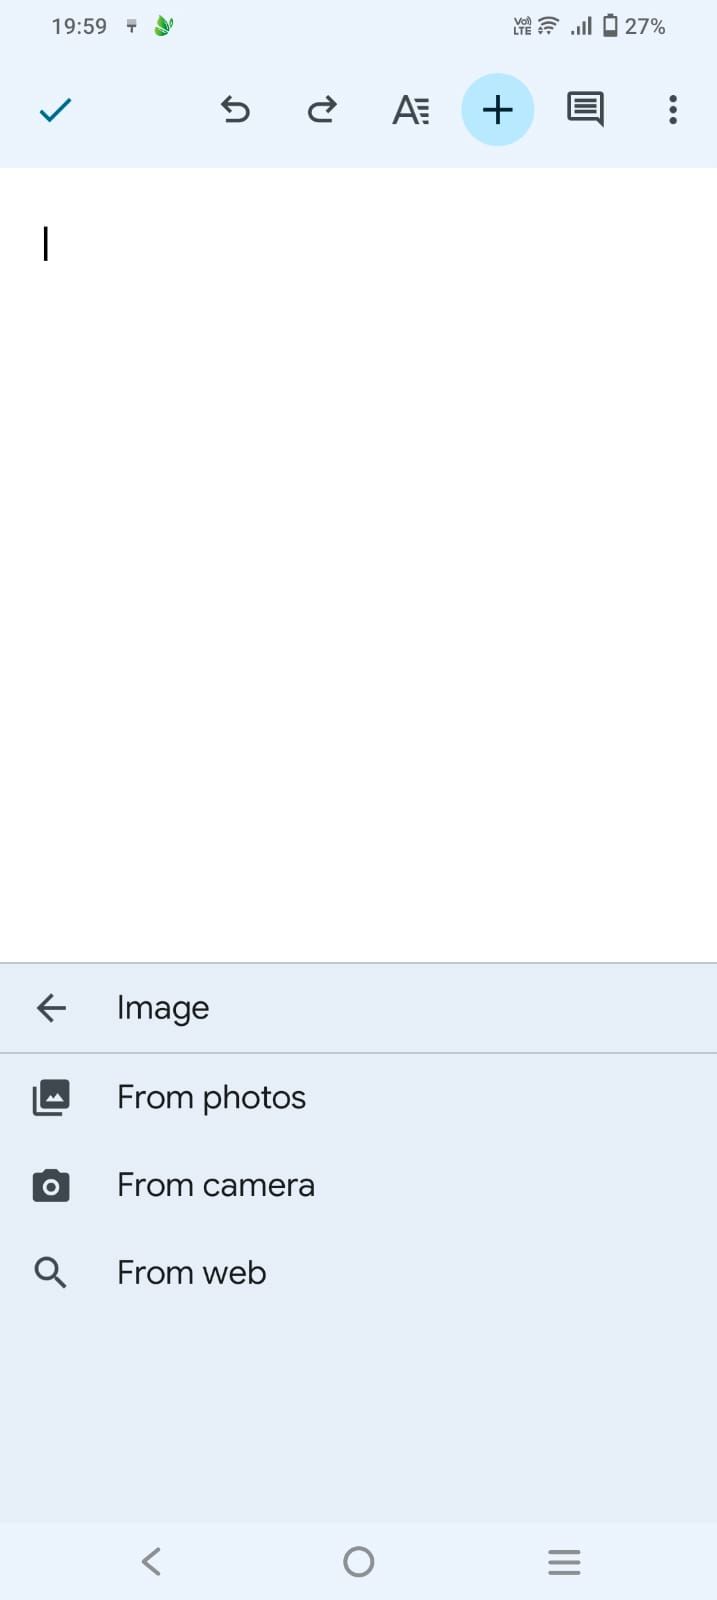 Captura de tela mostrando todas as opções de imagem no aplicativo Google Docs para dispositivos móveis